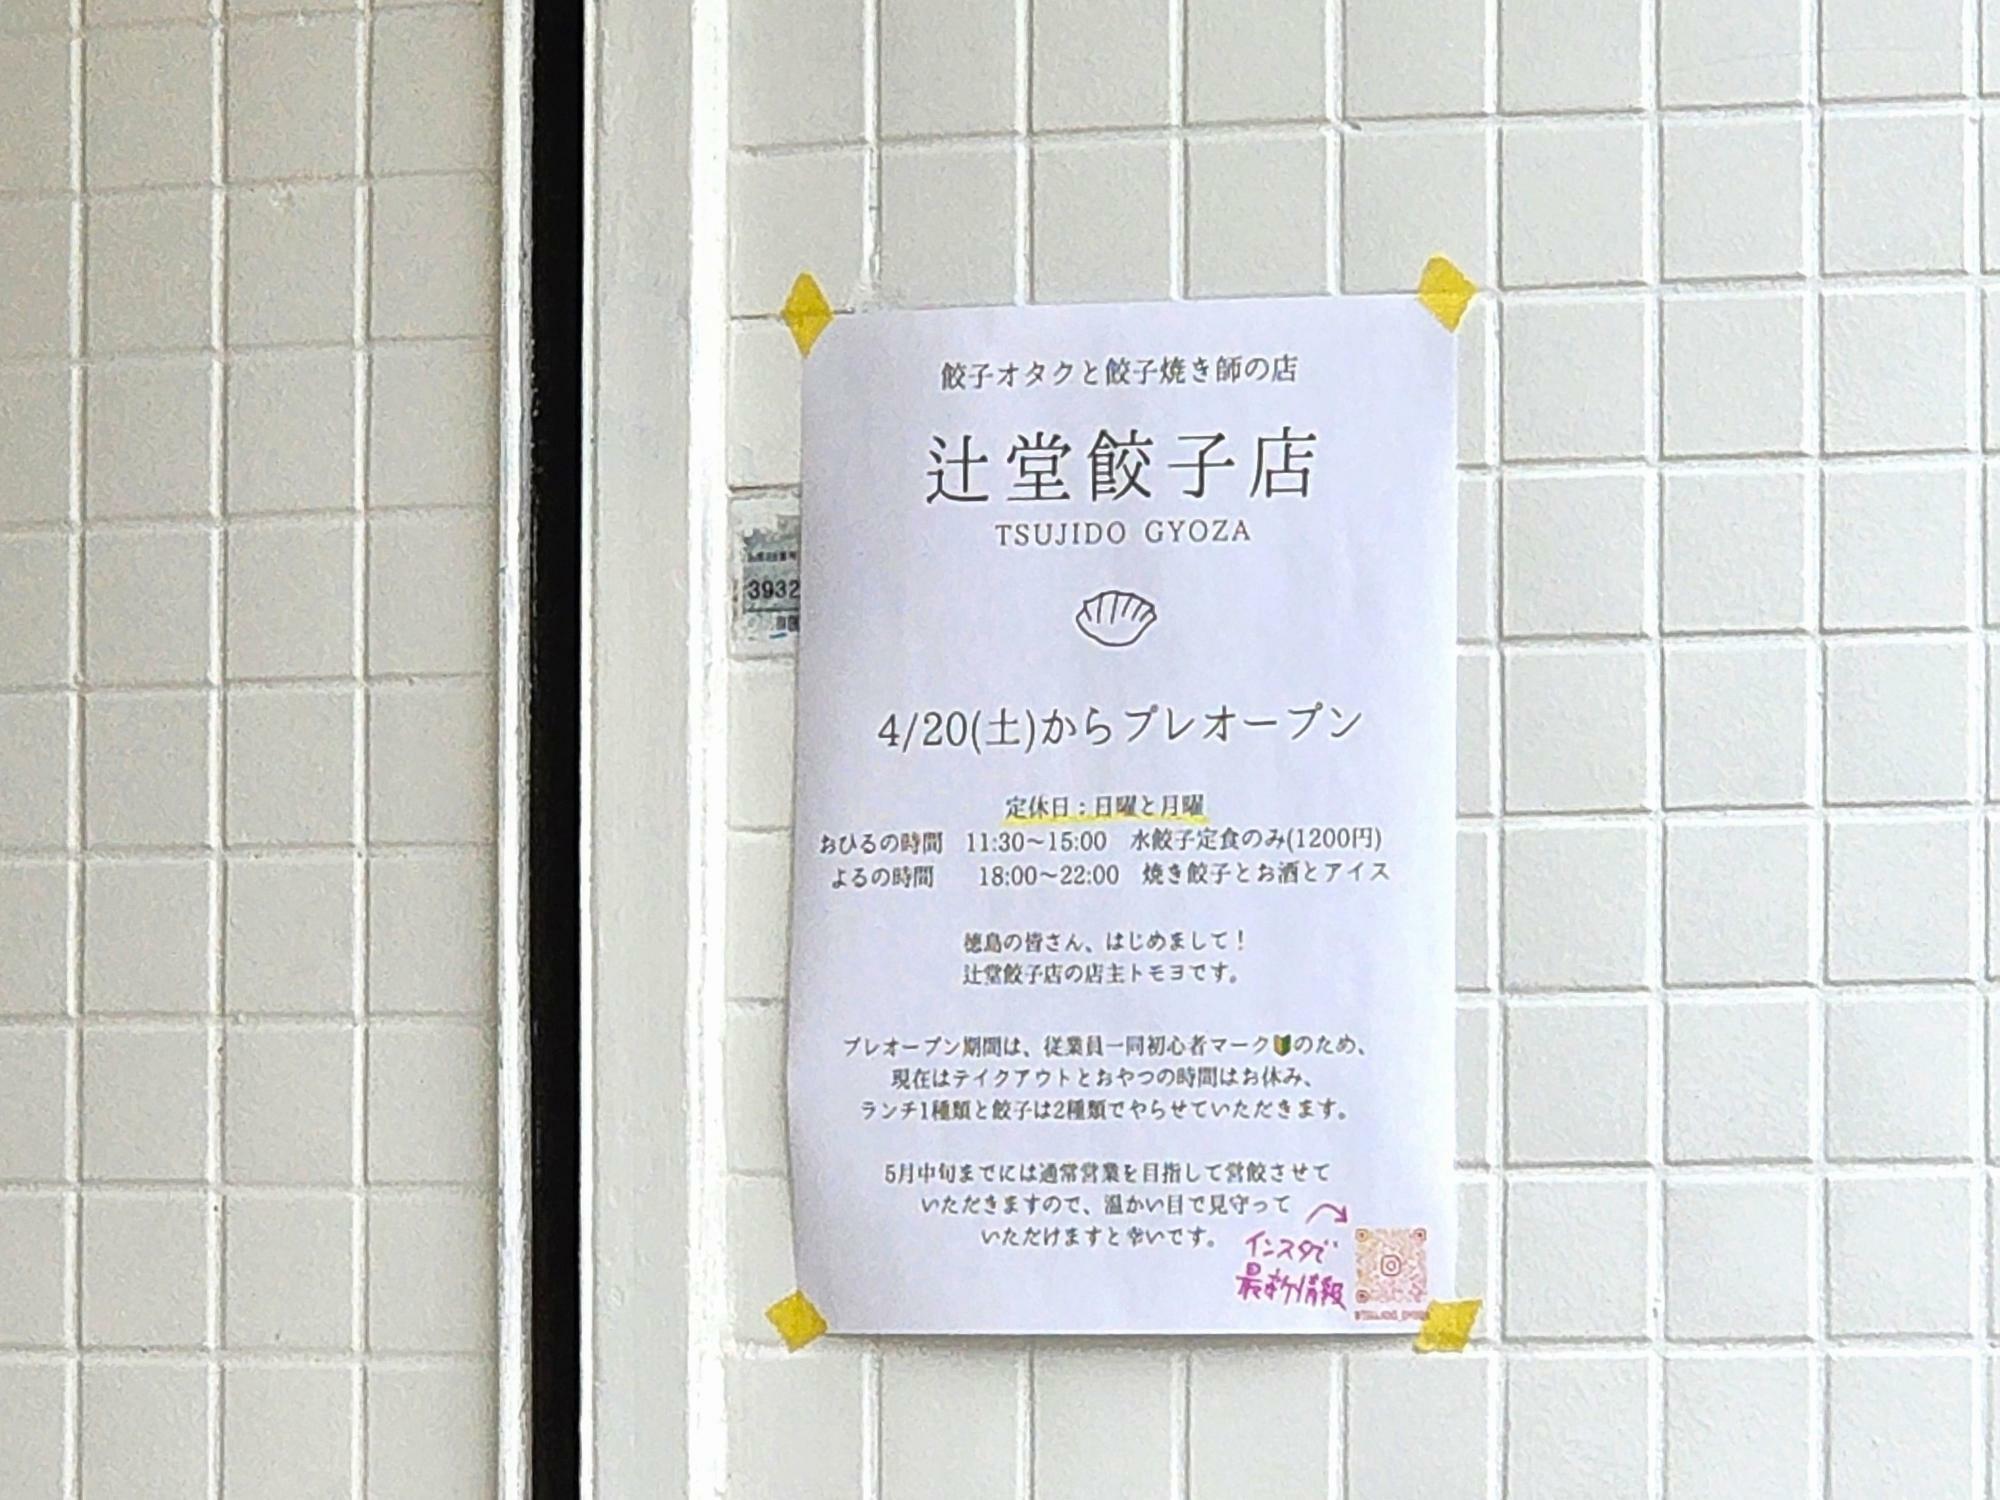 餃子オタクと餃子焼き師の店「辻堂餃子店」告知物。